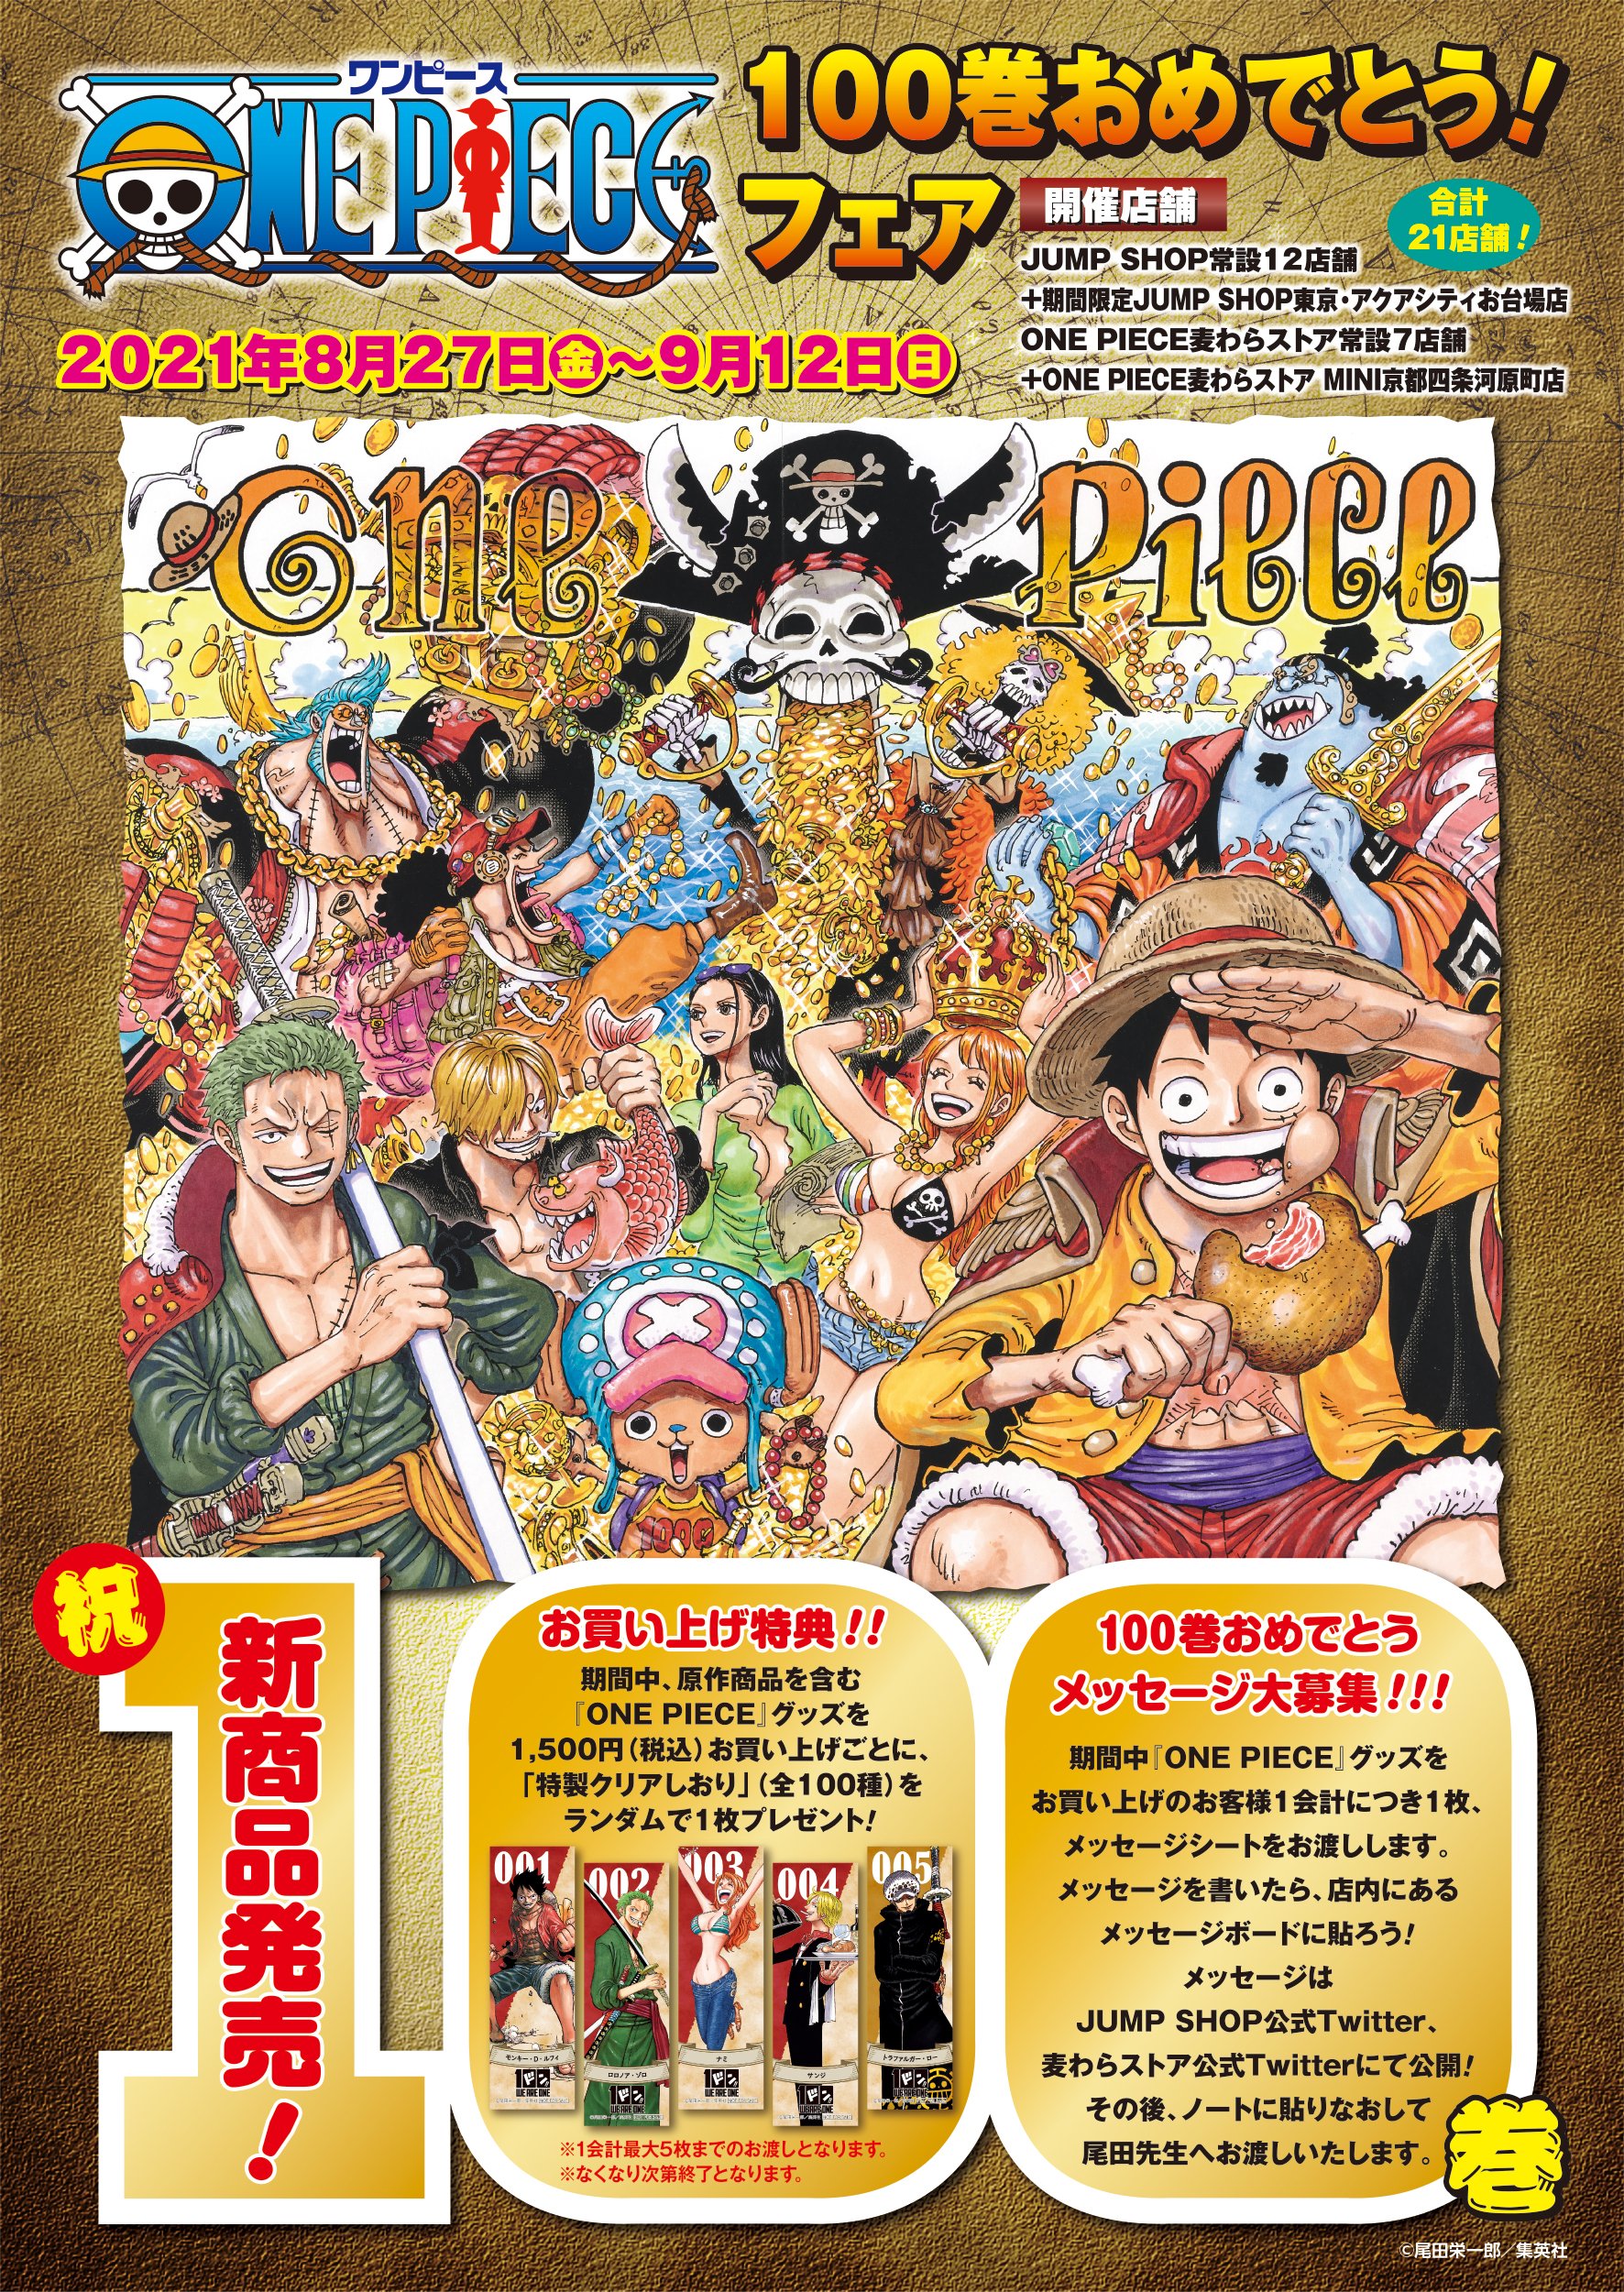 One Piece 麦わらストア公式 フェア情報 One Piece 100巻おめでとう フェア いよいよ今週8月27日 金 からスタート 新商品がドーンと発売 100種類のフェア特典 100巻おめでとうメッセージも大募集 詳しくは画像を見てね